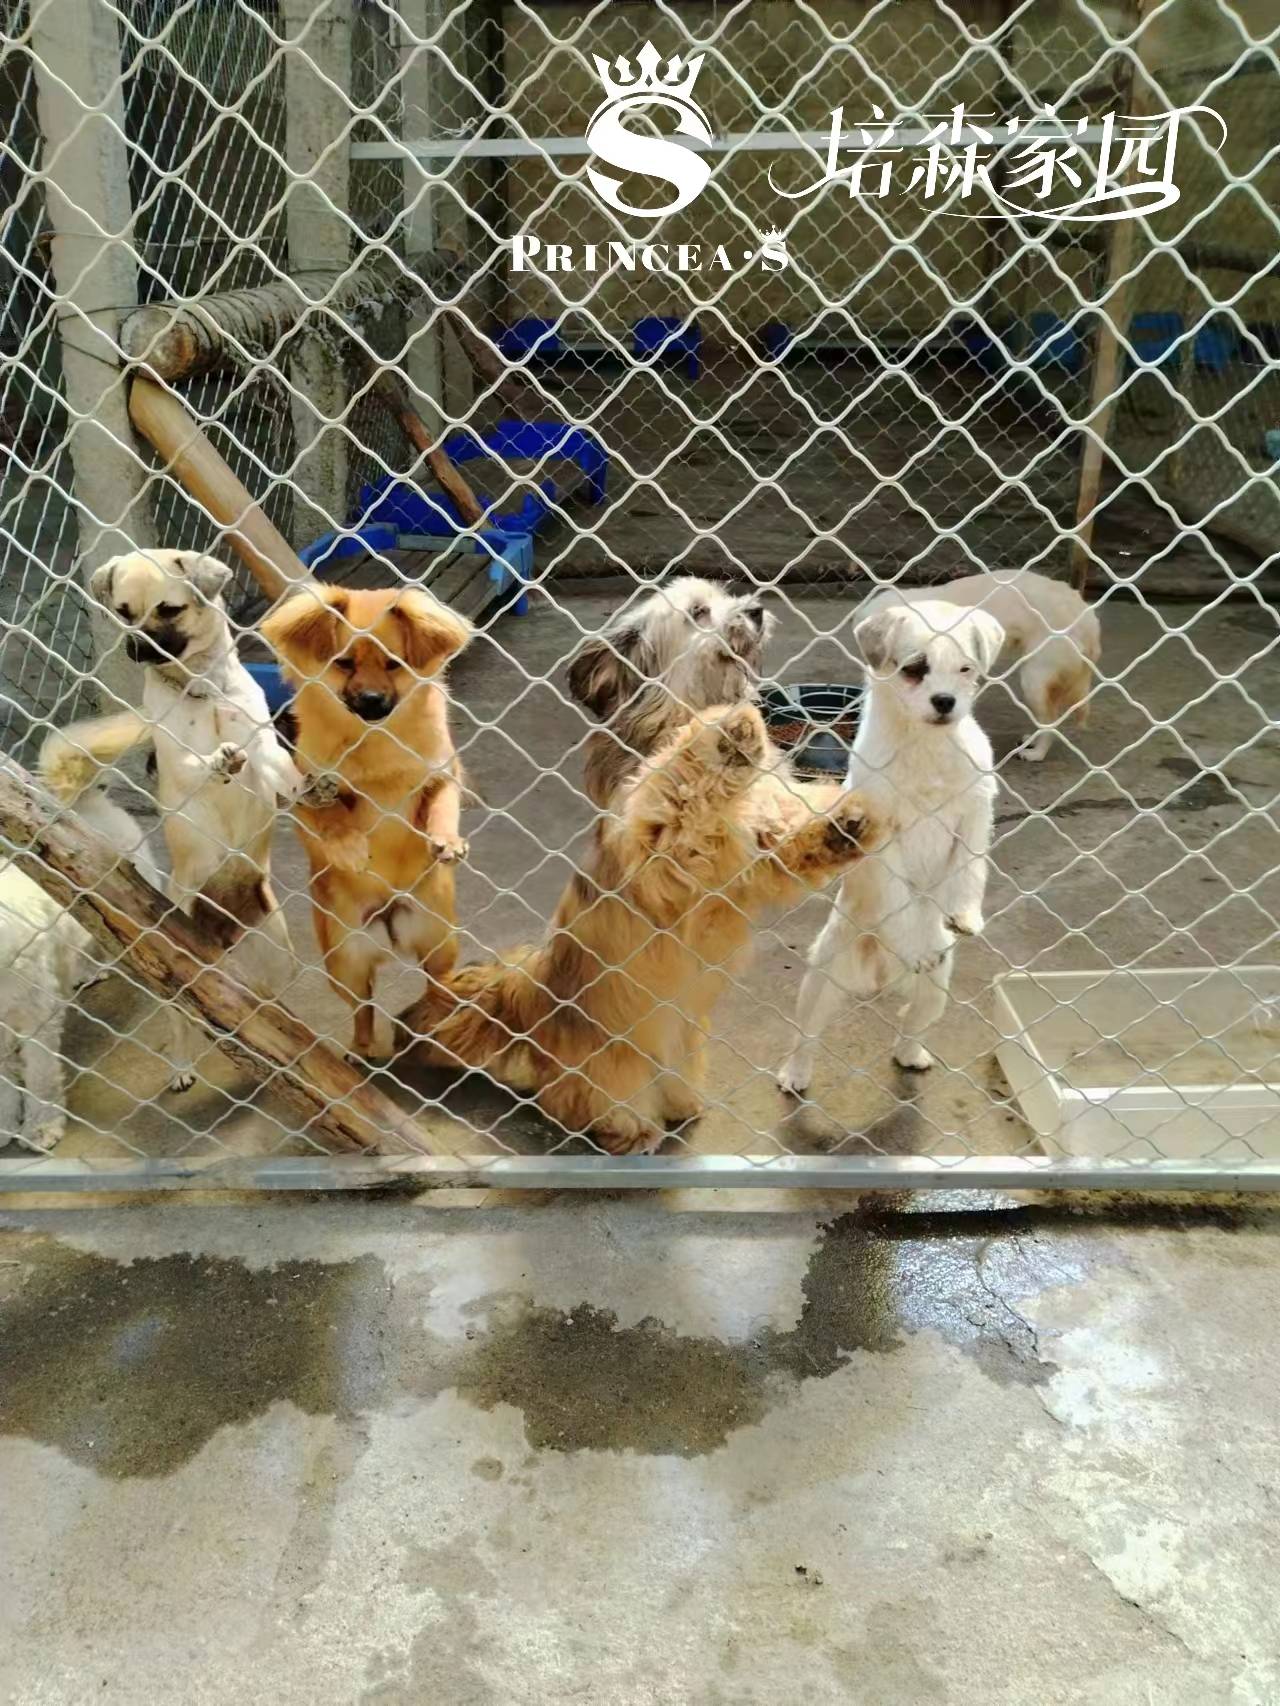 凤城爱心救助流浪动物基地—从不放弃每一条流浪猫狗！